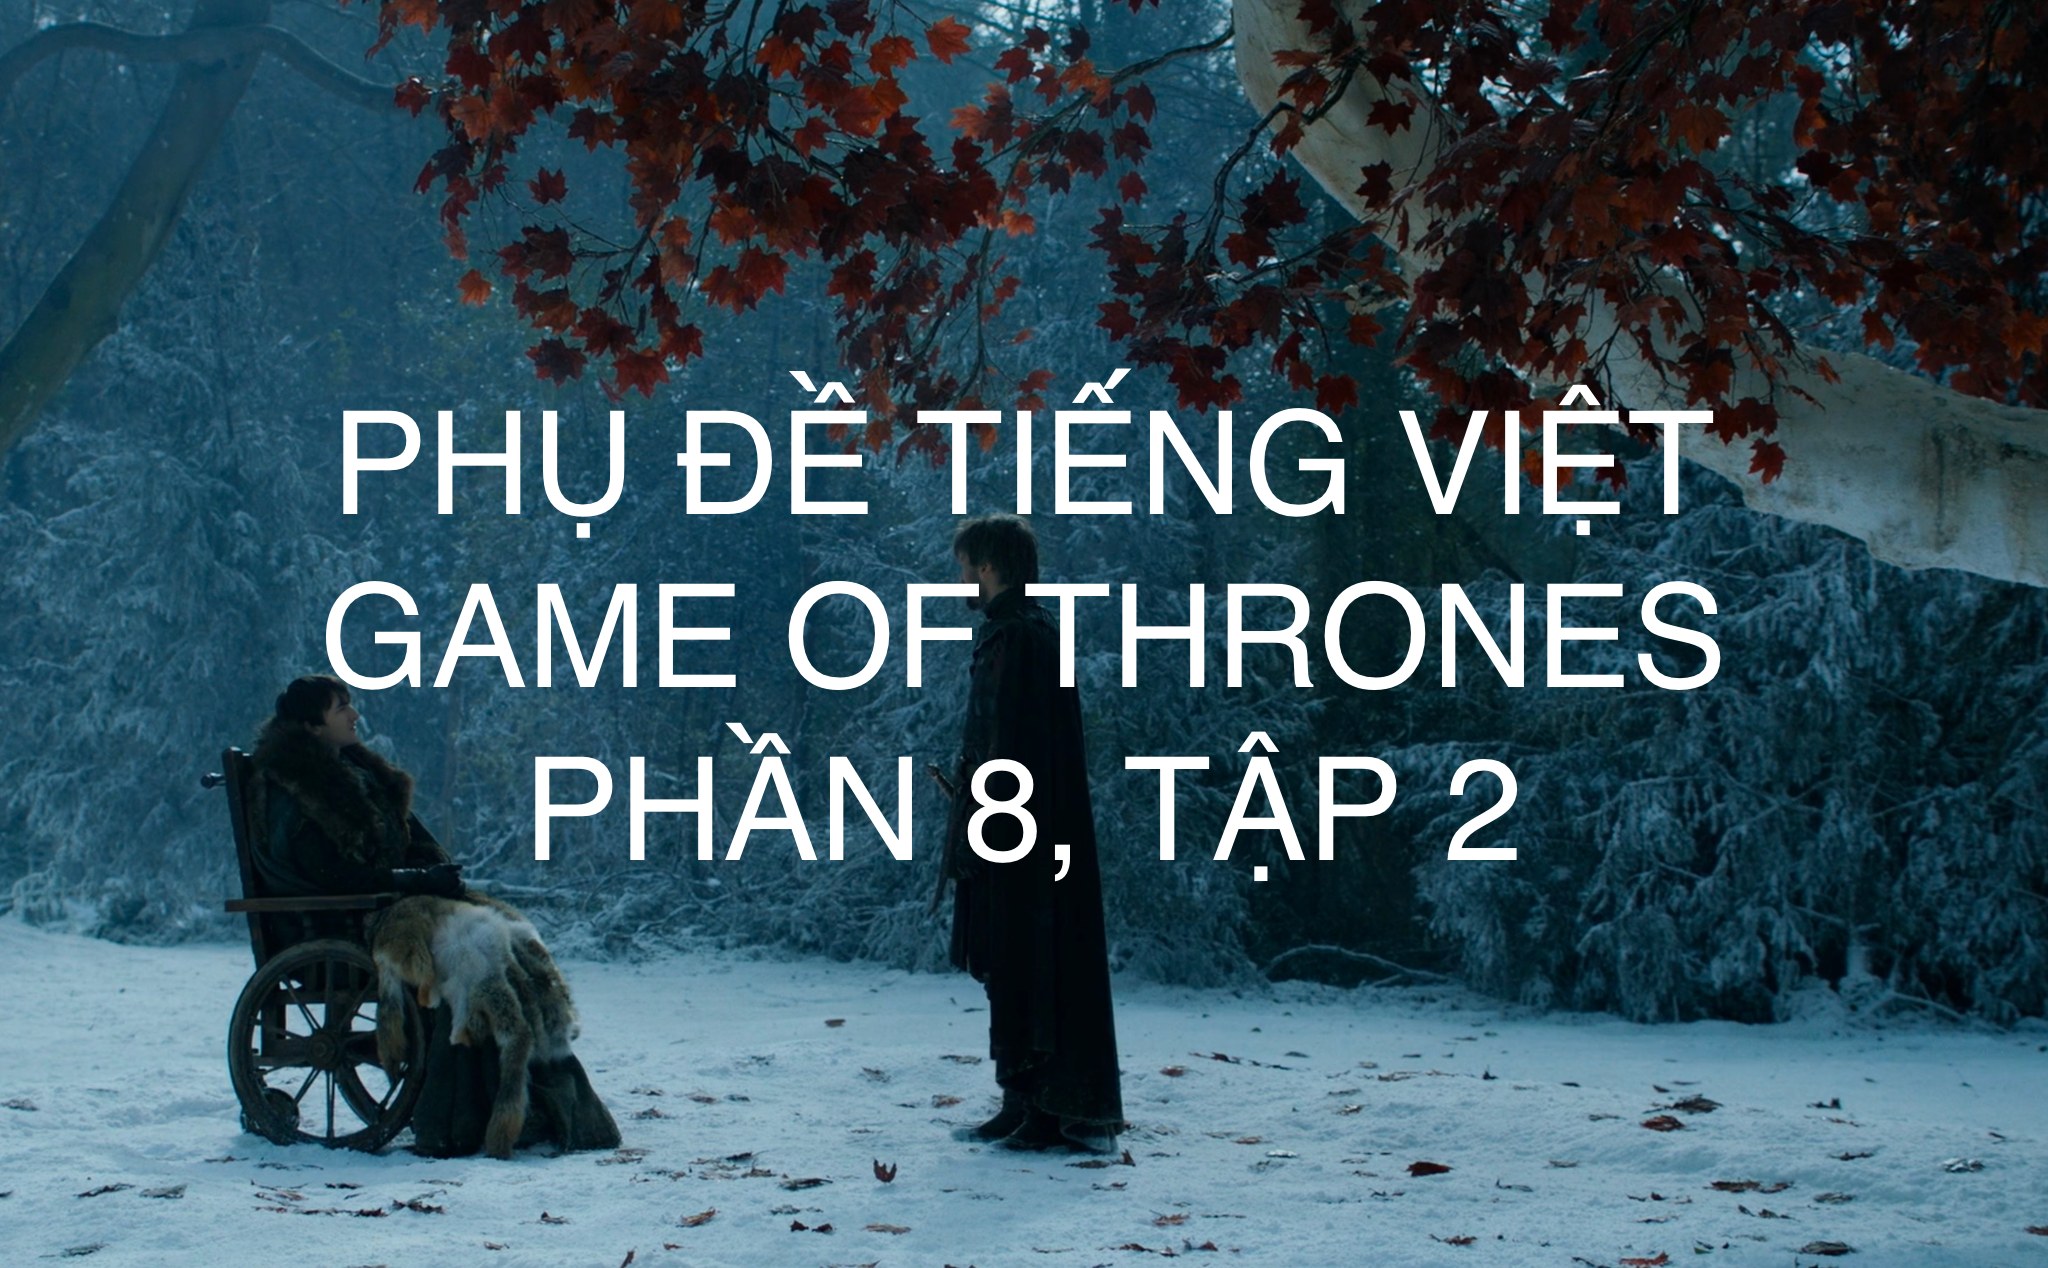 Phụ đề tiếng Việt Game Of Thrones Phần 8, Tập 2